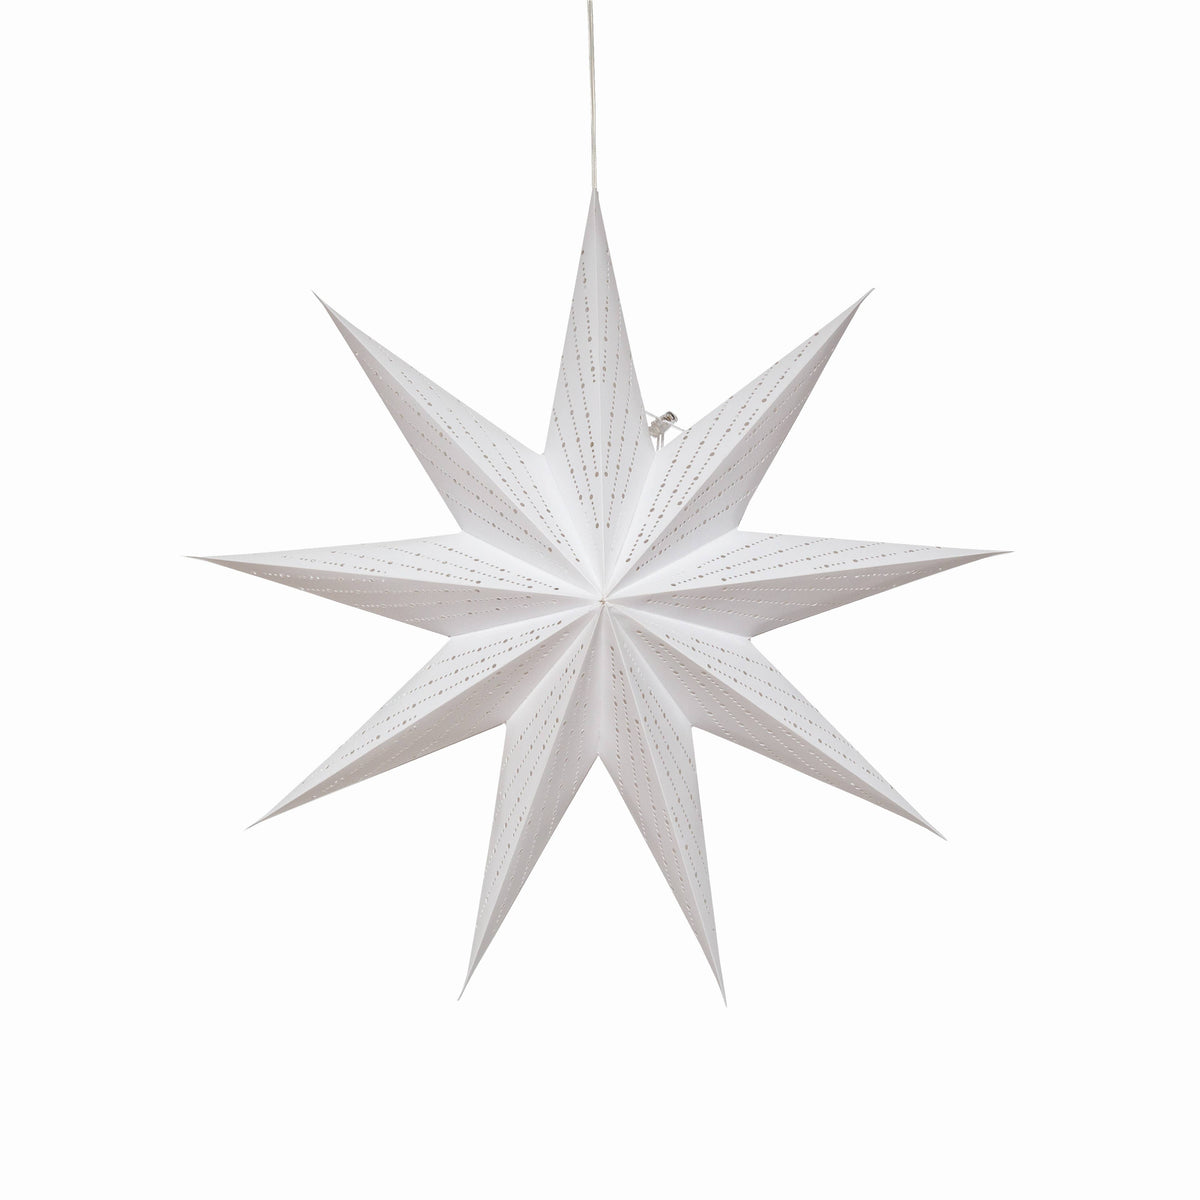 Dottie ~  9 Pointer, 18inch, White, Paper Star Lantern Light